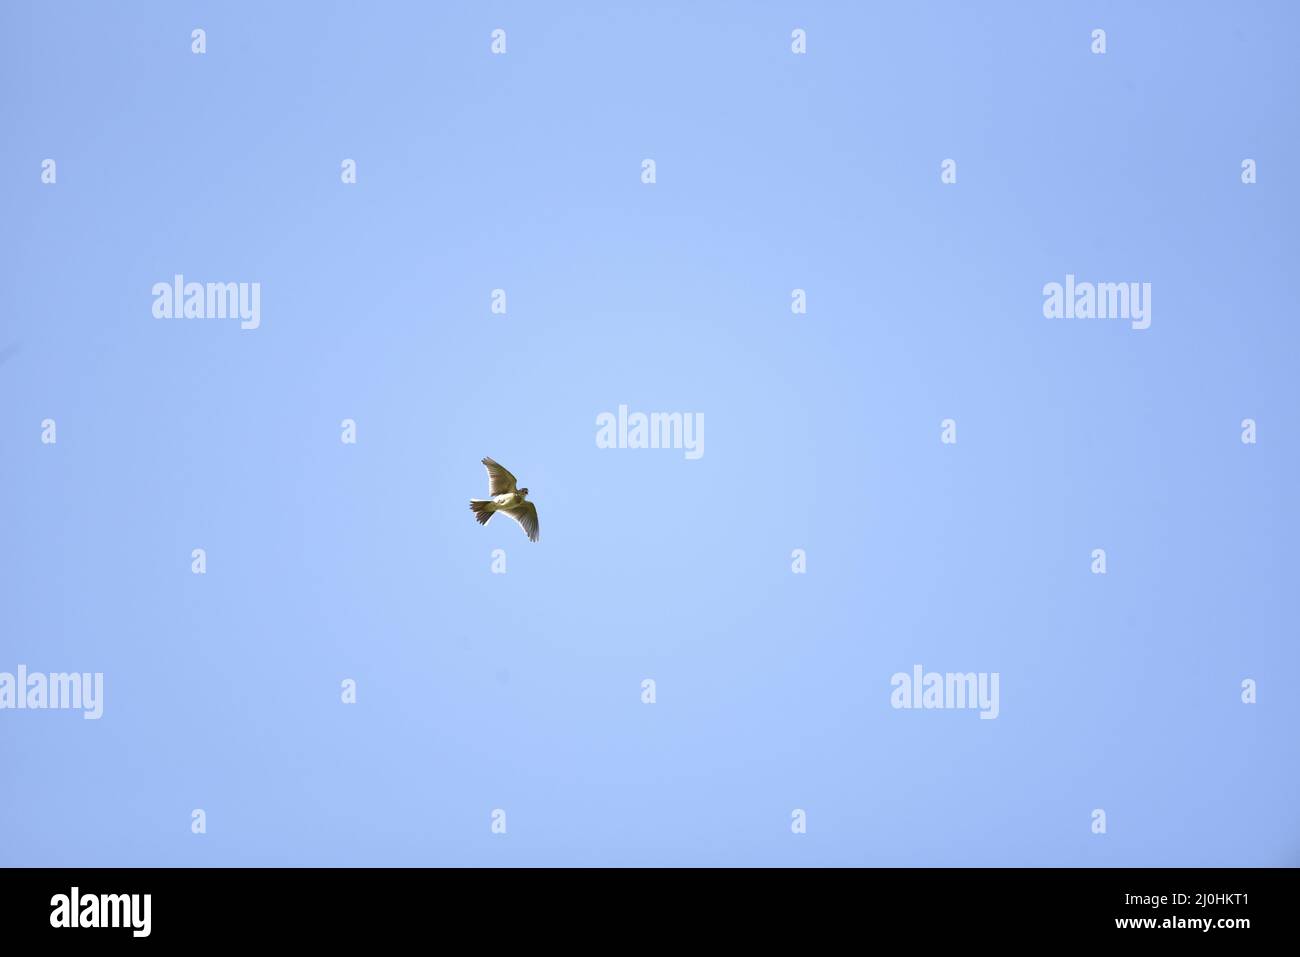 Eurasische Skylark (Alauda arvensis) Display Fliegen Sie nach links vom Bild gegen einen blauen Himmel mit Beinen unter sich, singend, mit dem Kopf zur Kamera gedreht Stockfoto